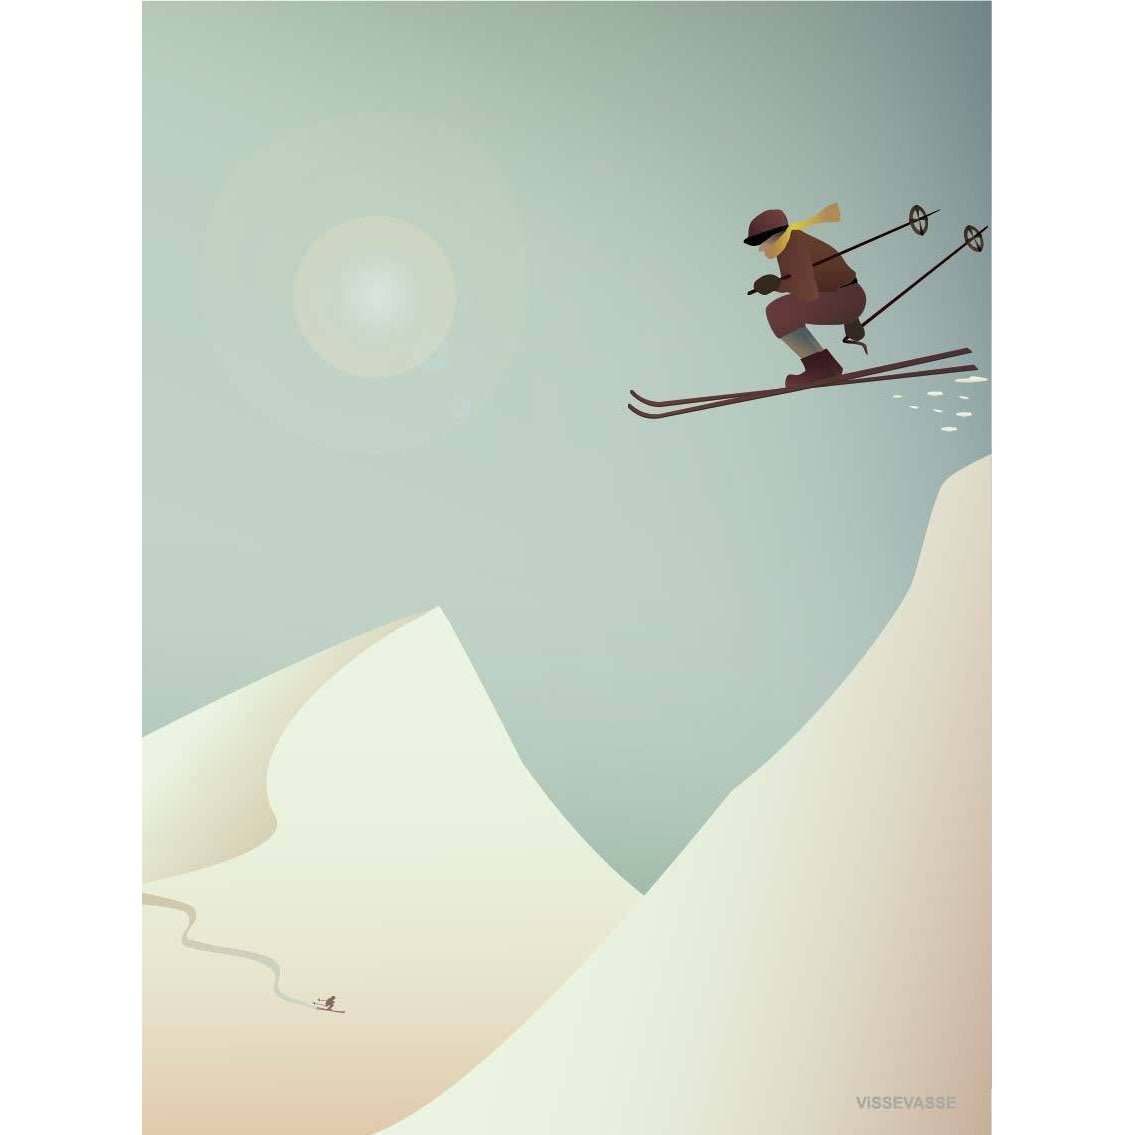 Vissevasse Skiing veggspjald, 15 x21 cm